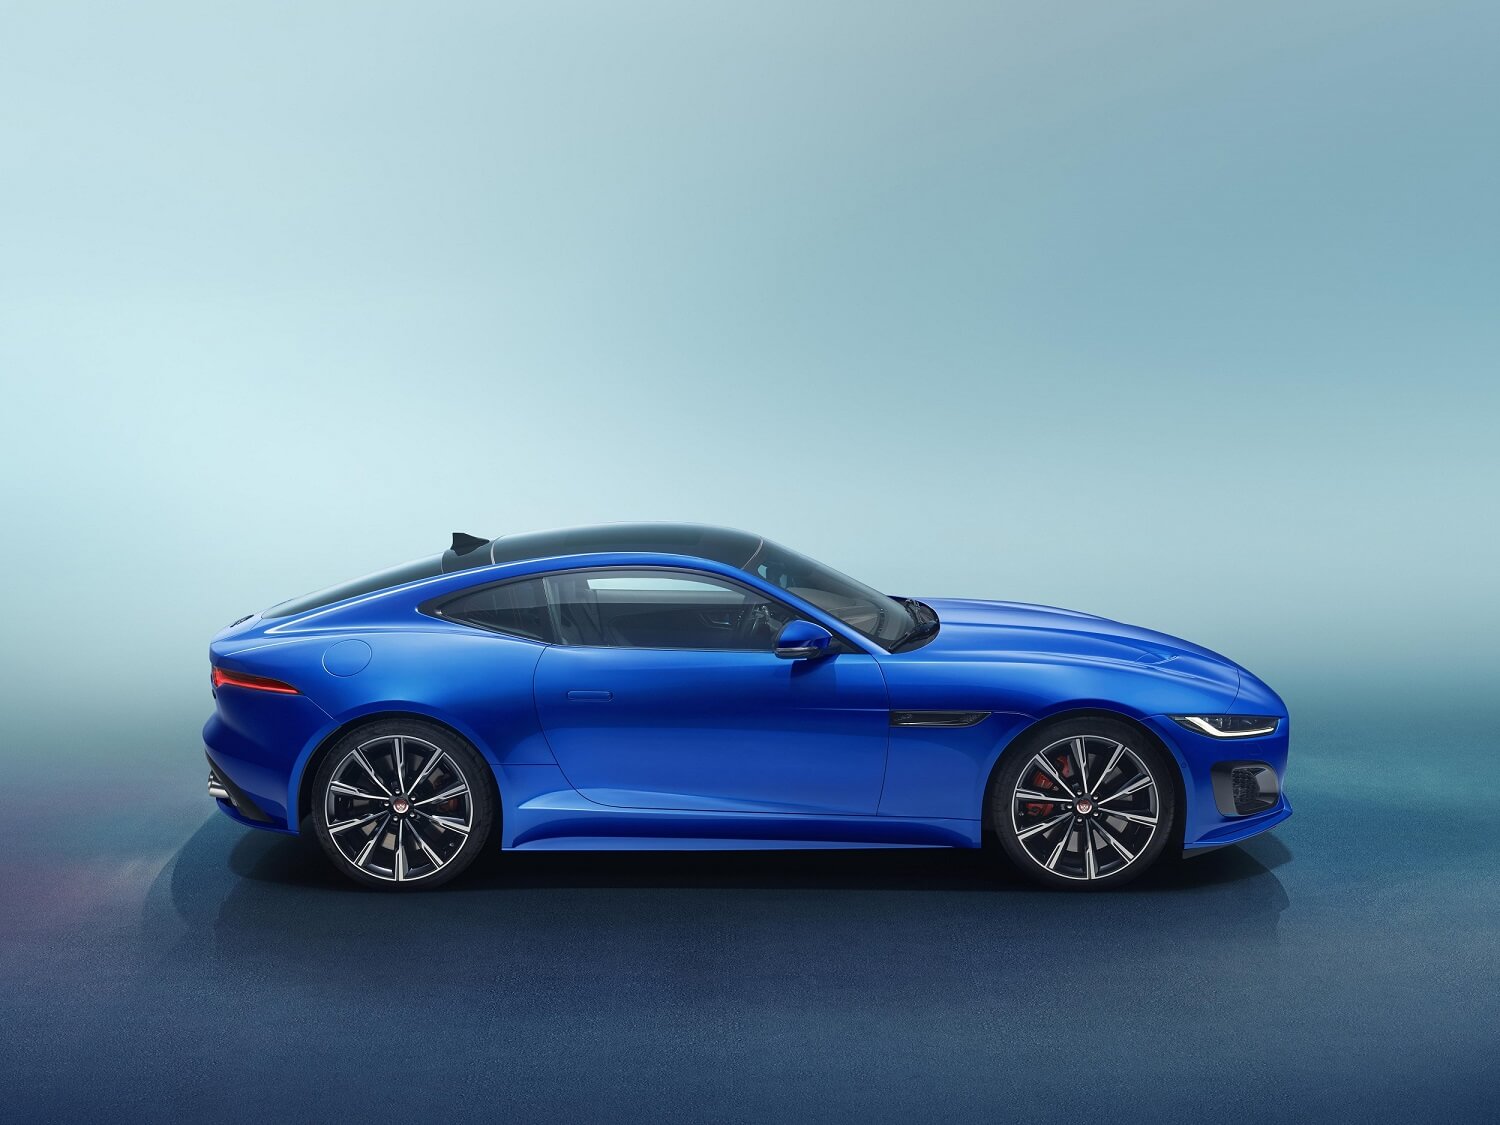 De perfil, o Jaguar F Type azul se destaca pelo novo capô em forma de concha